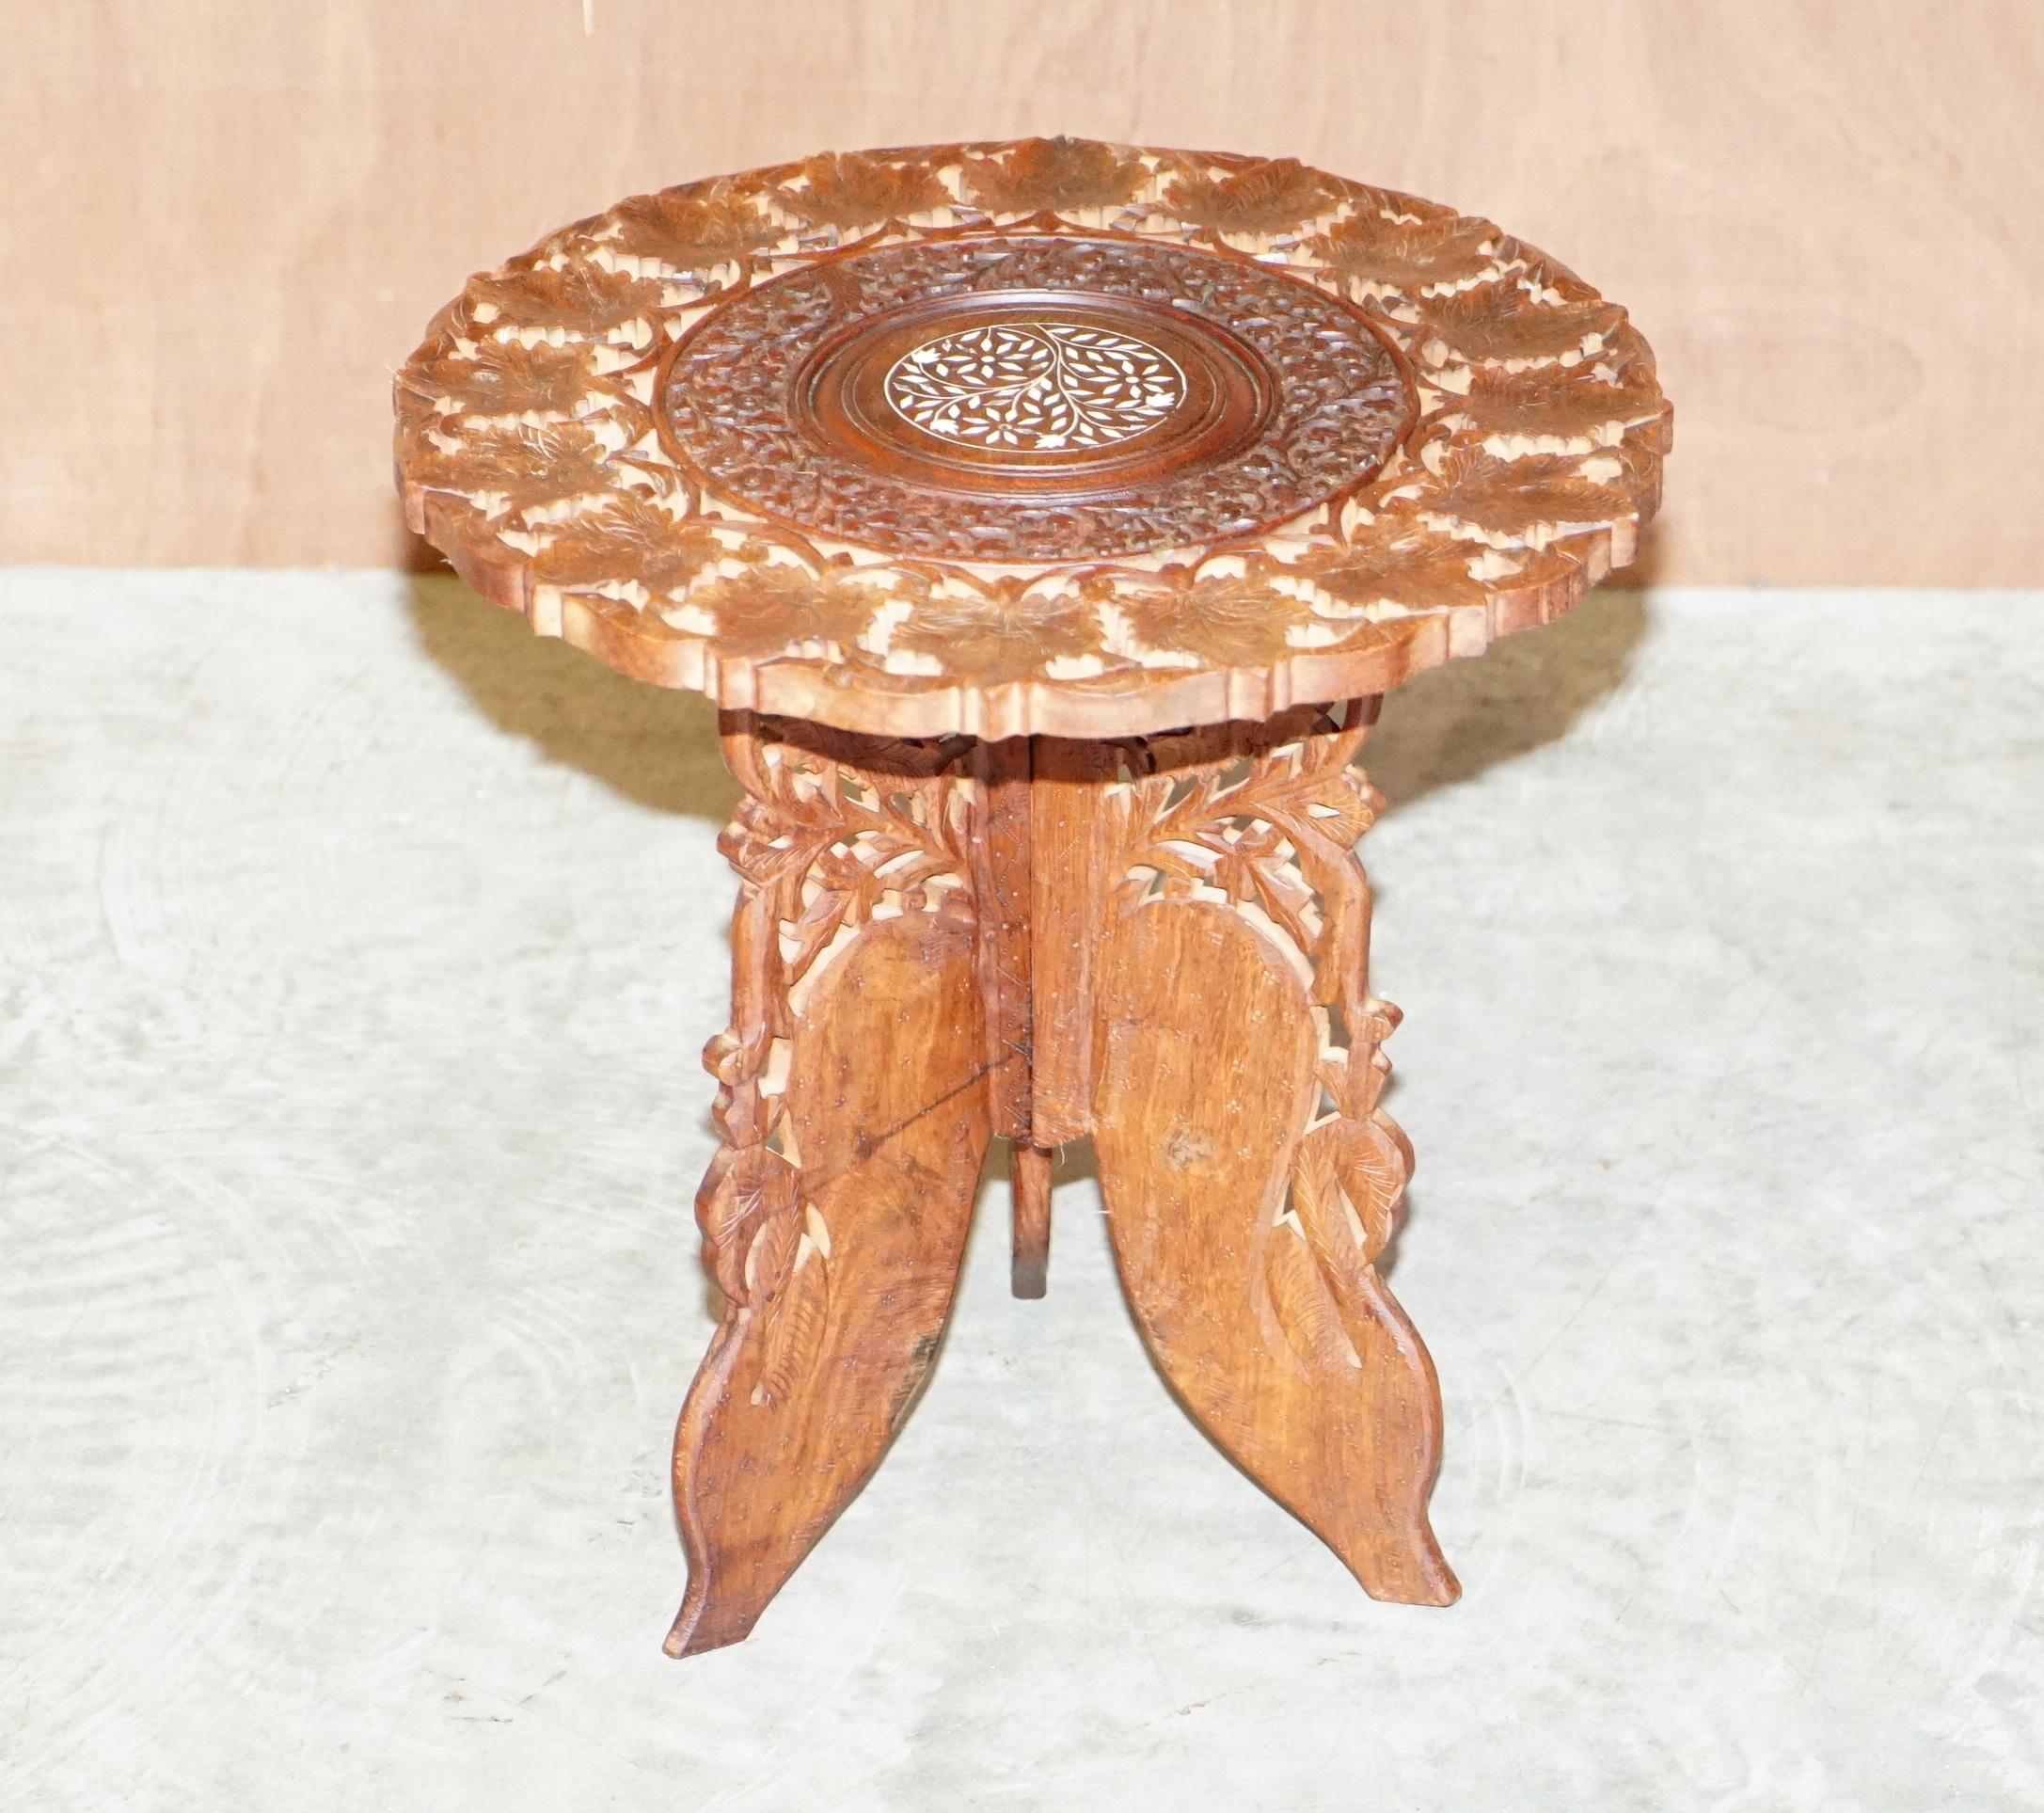 Nous sommes ravis d'offrir à la vente cette belle table d'appoint birmane sculptée à la main dans du bois de rose massif 

Une table très belle et décorative, qui peut être utilisée comme lampe à vin ou table d'appoint

Sculpté de haut en bas